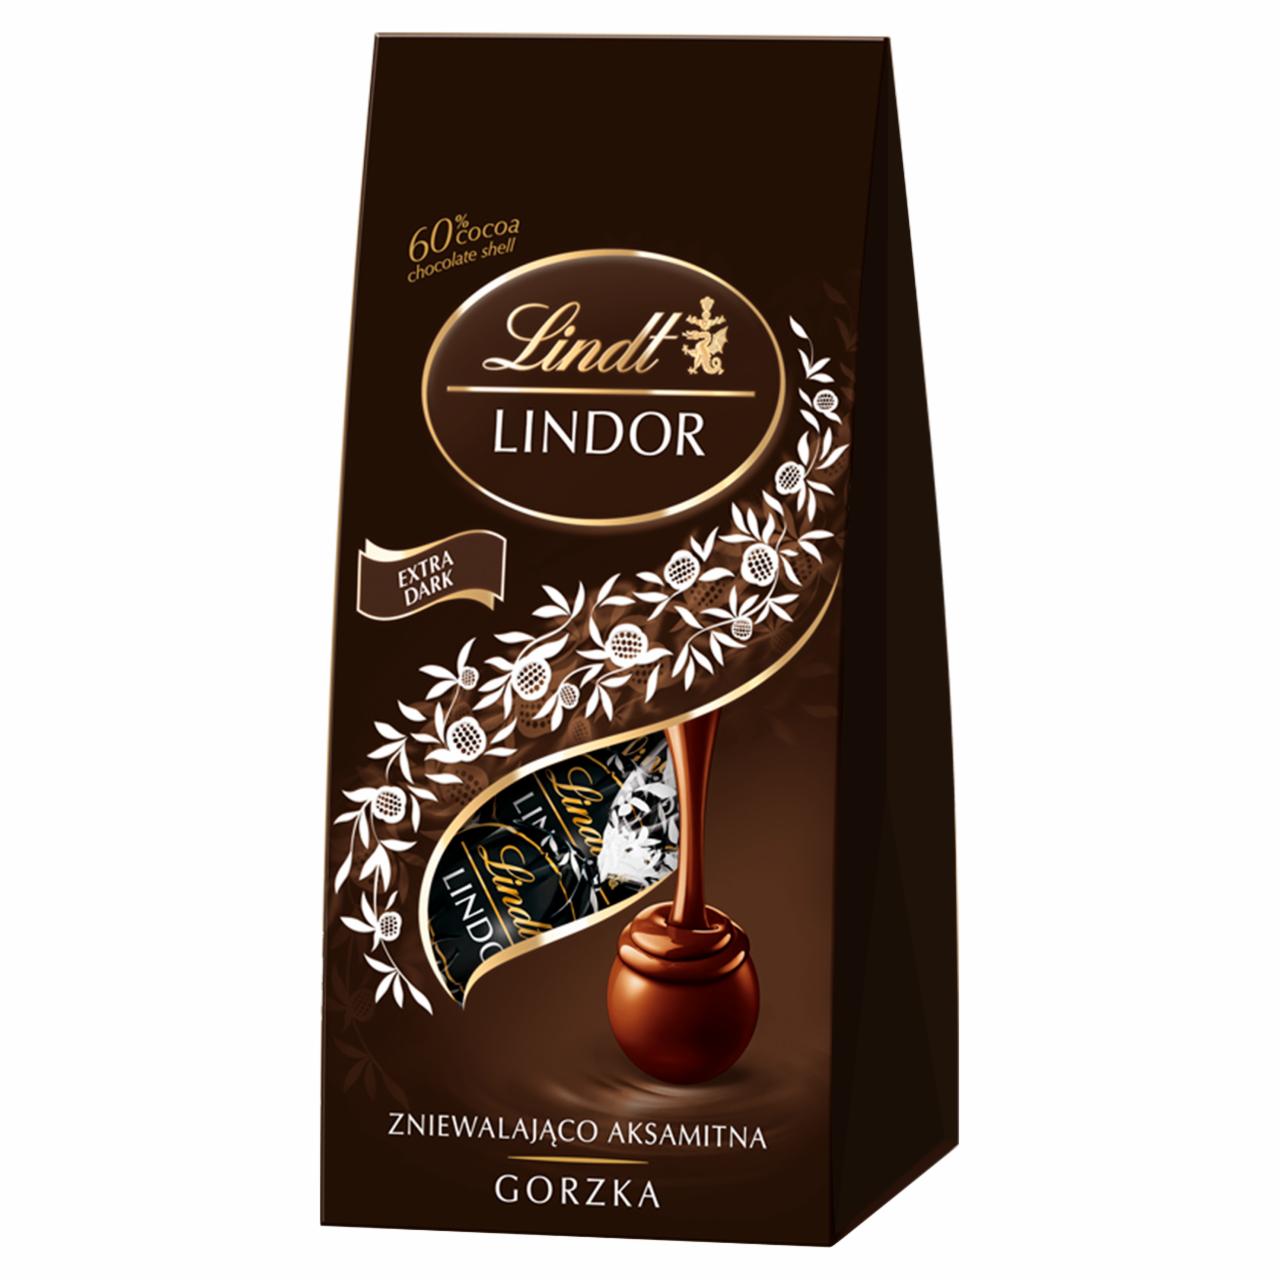 Zdjęcia - Lindt Lindor Praliny z gorzkiej czekolady 60% kakao 98 g